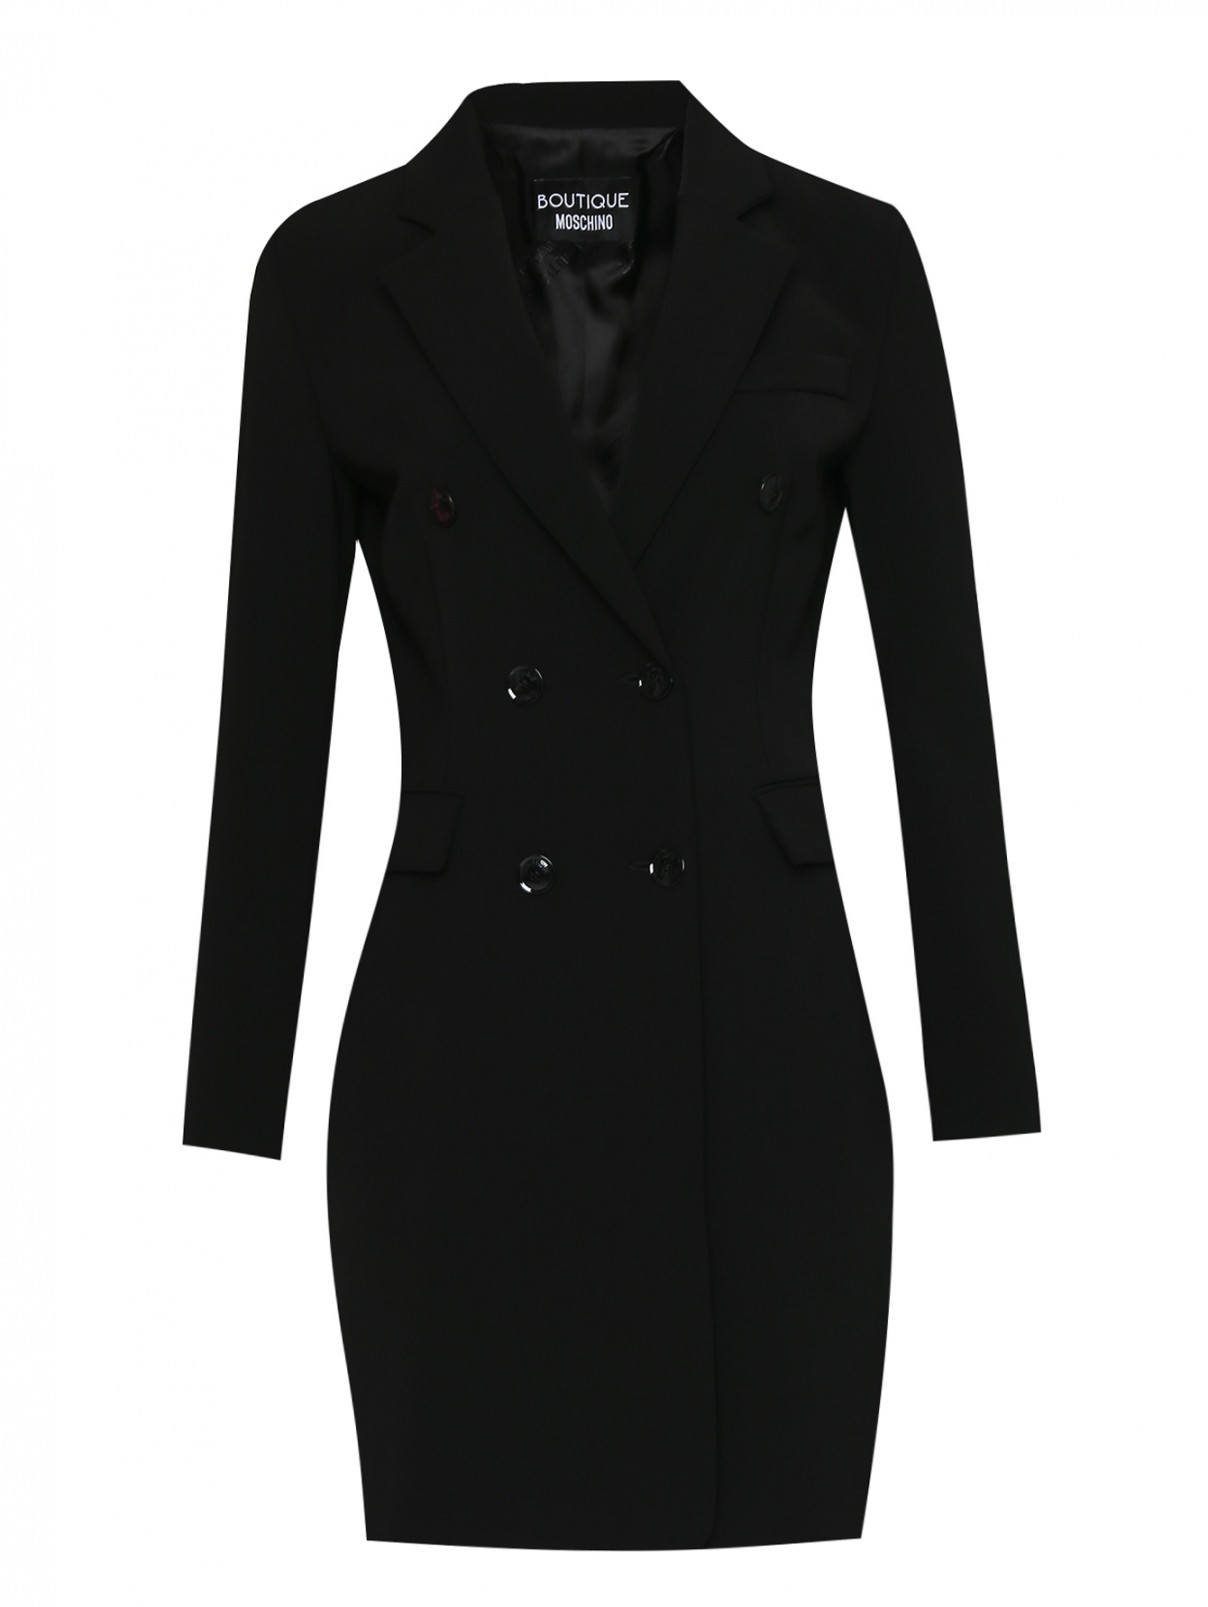 Платье-жакет на молнии Moschino Boutique  –  Общий вид  – Цвет:  Черный